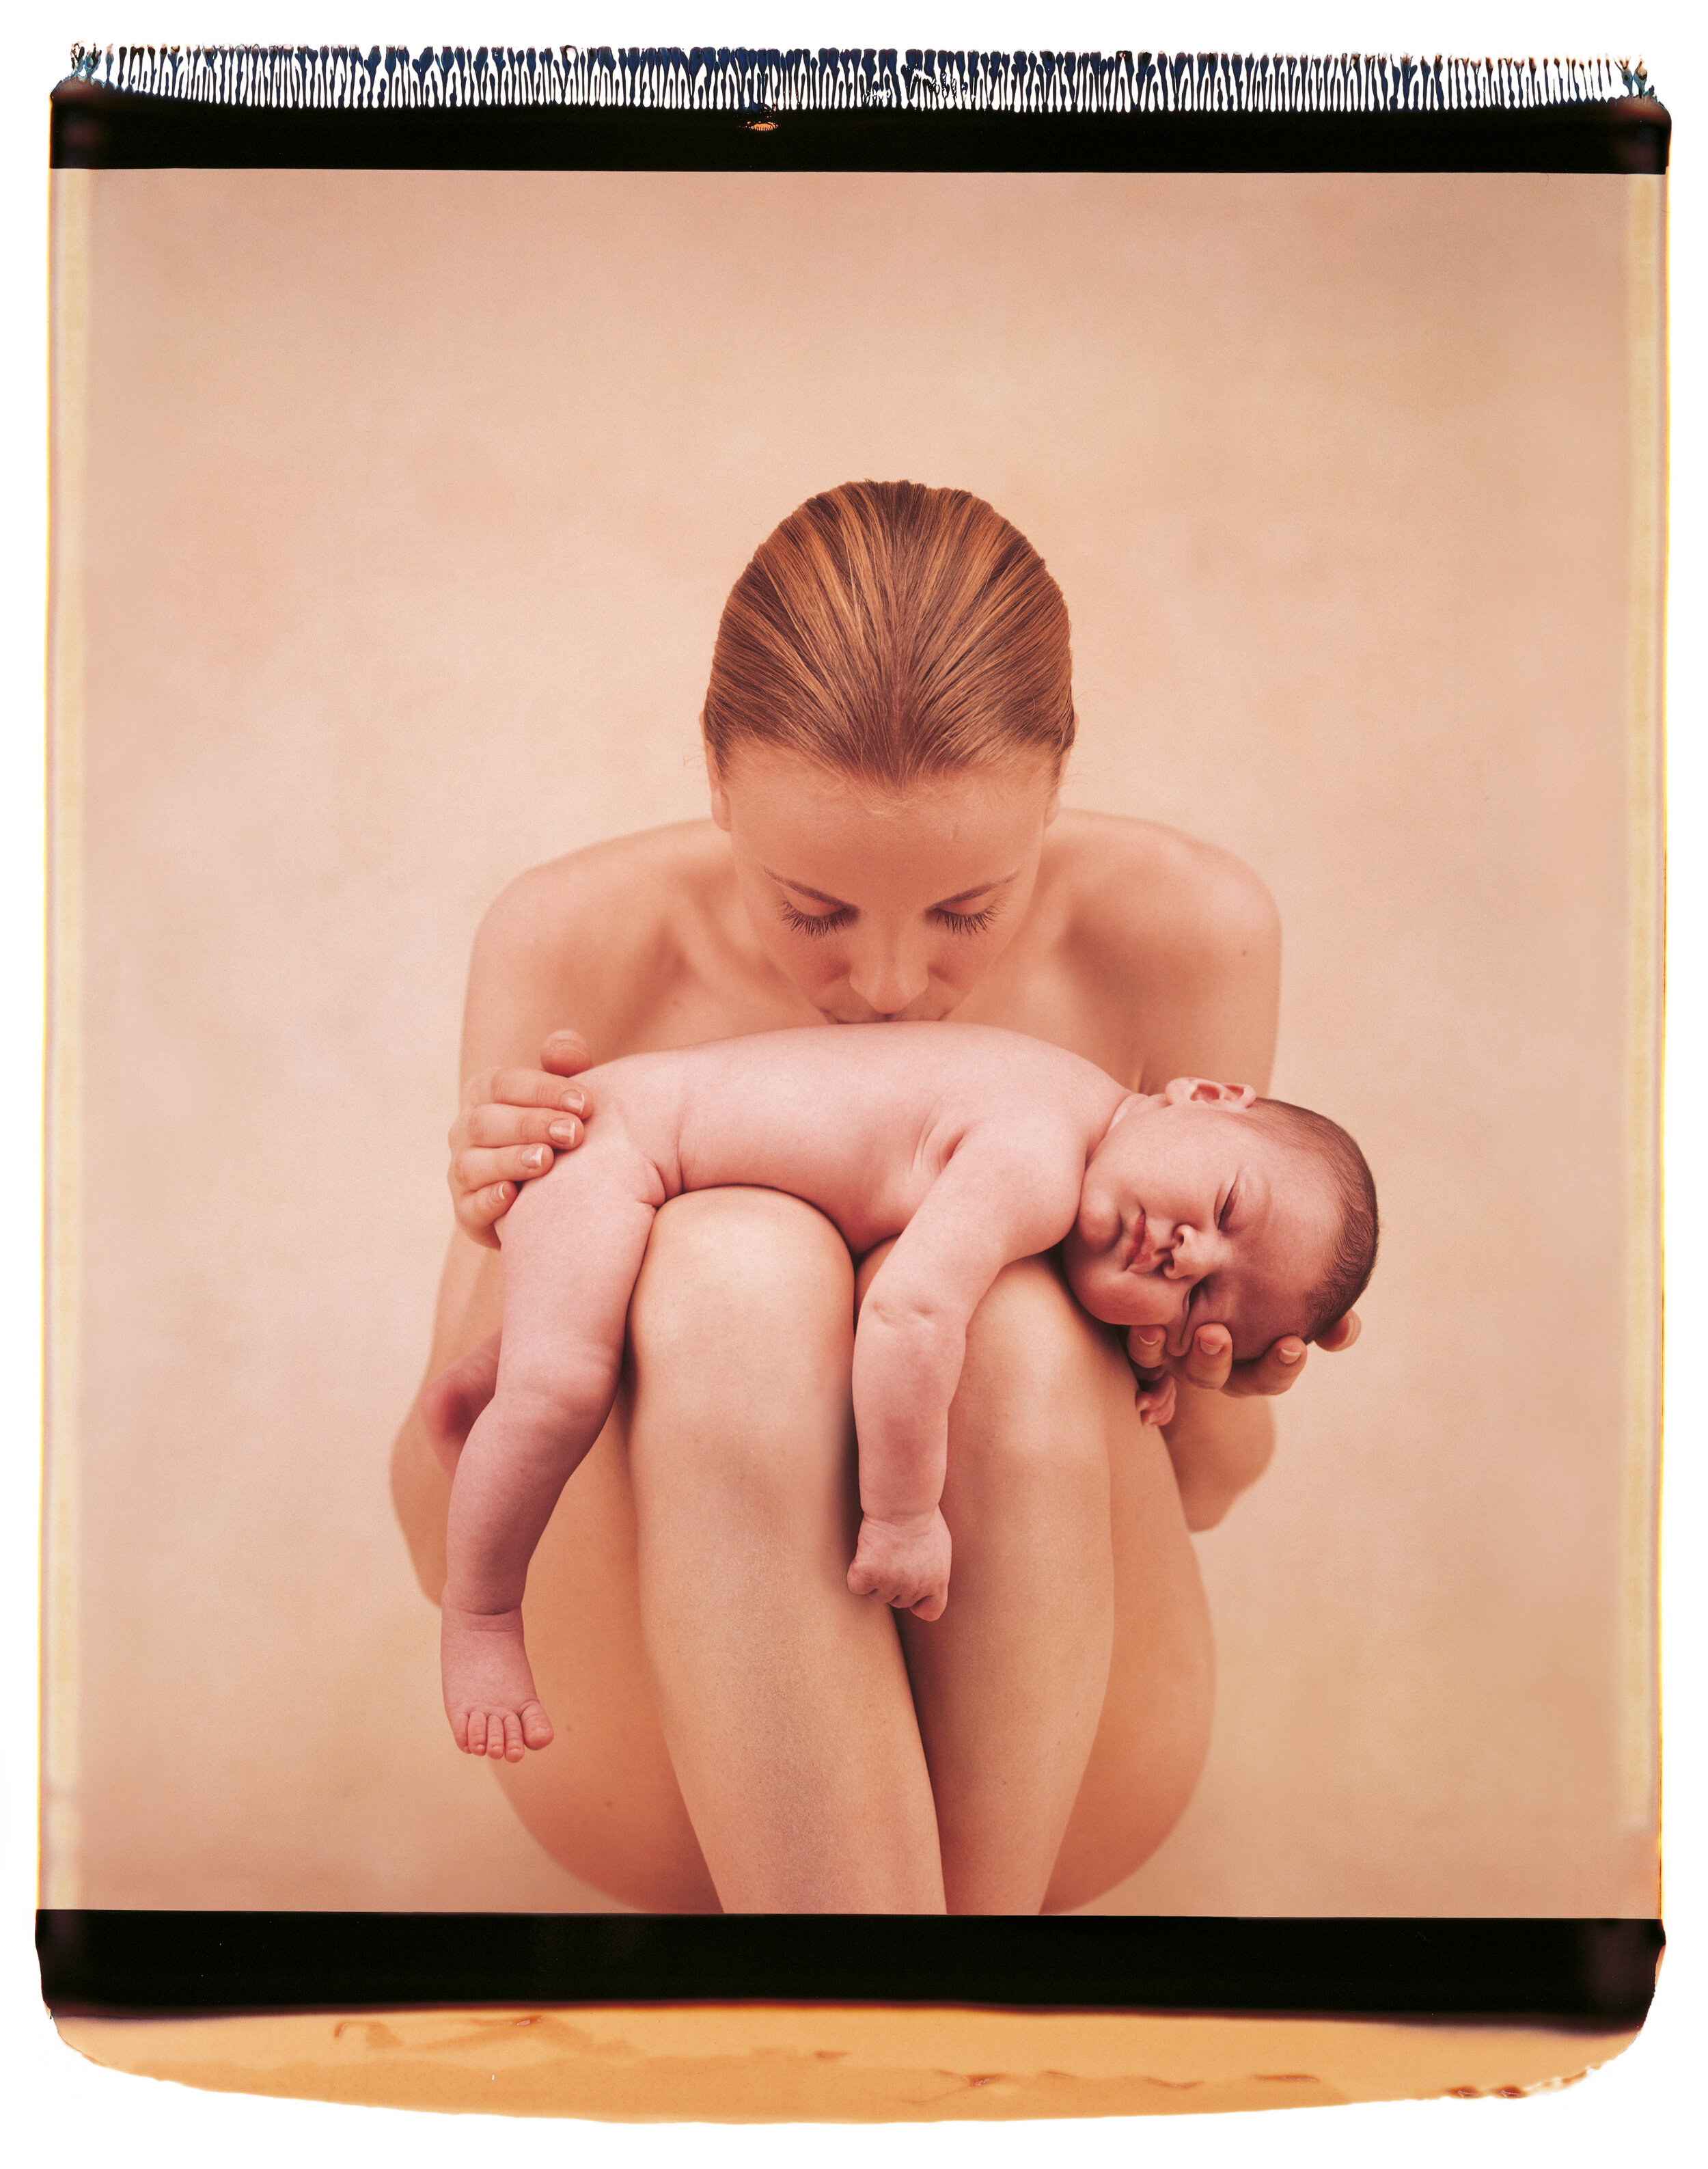 Поно детей. Женщина с младенцем. Фотосессия мама и малыш. Нагие дети с родителями.